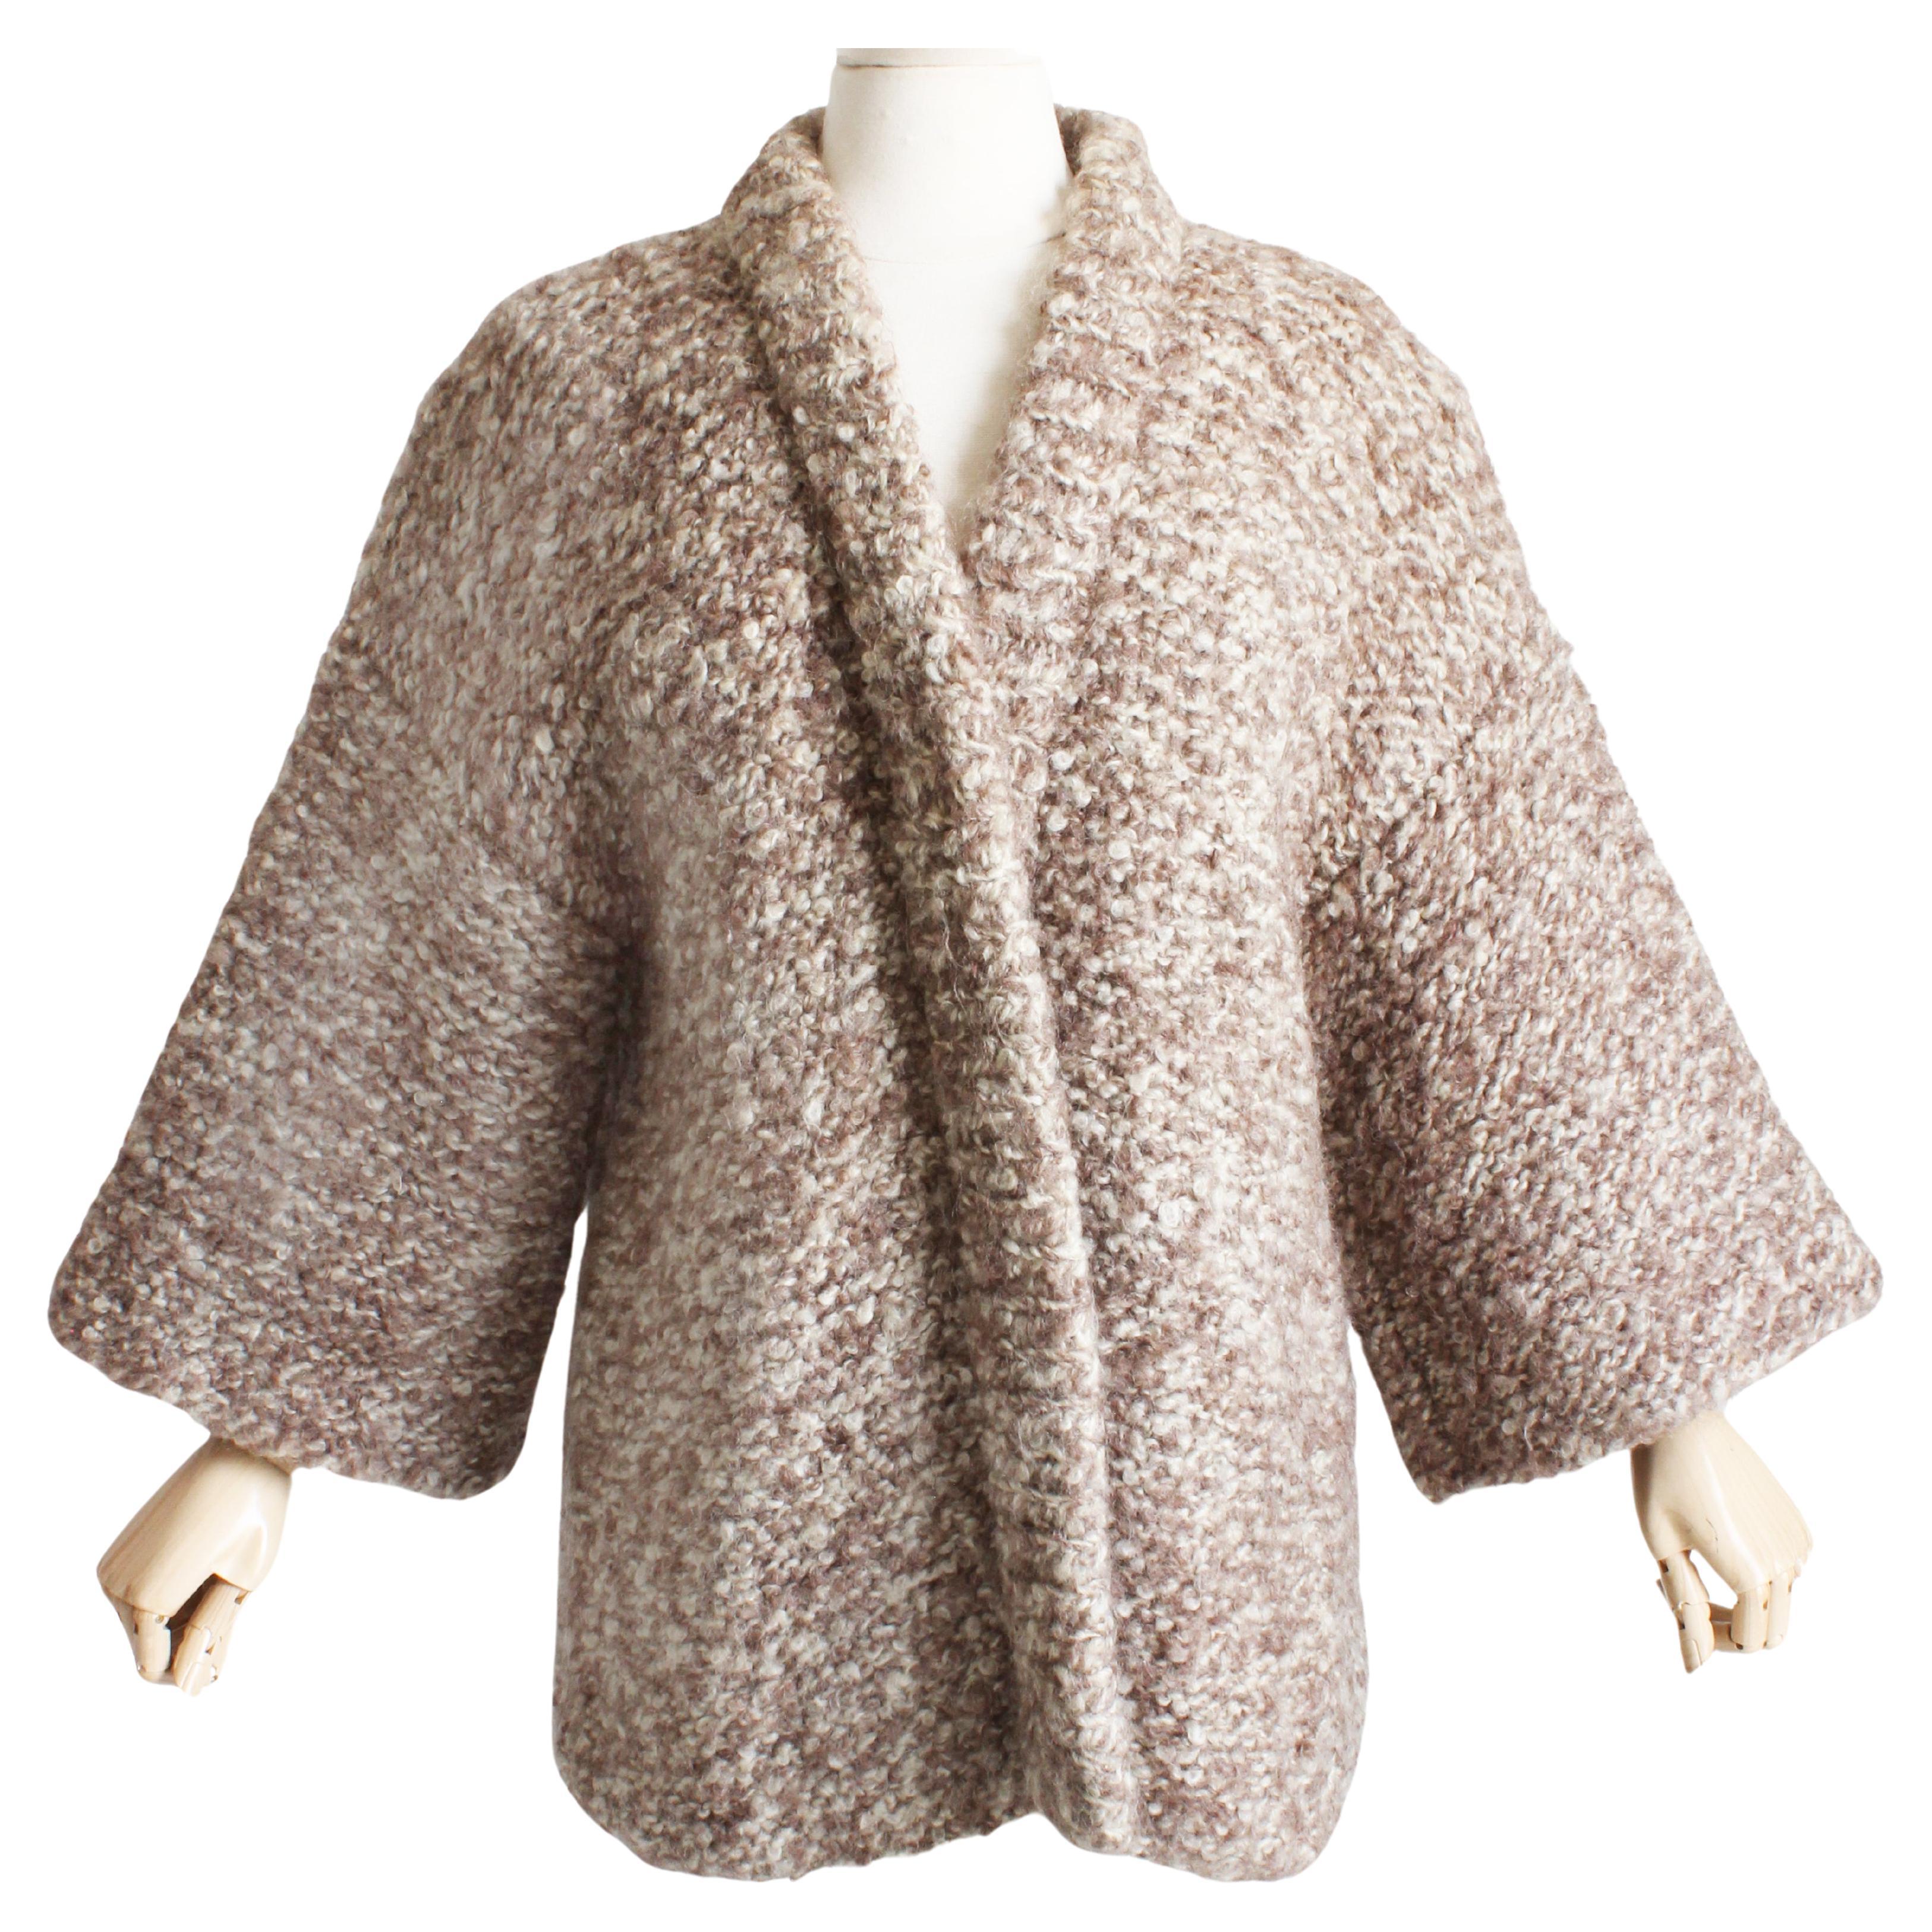 Bonnie Cashin The Knittery Noh Cardigan Jacket Hand Knit Kimono Sleeve Rare 70s